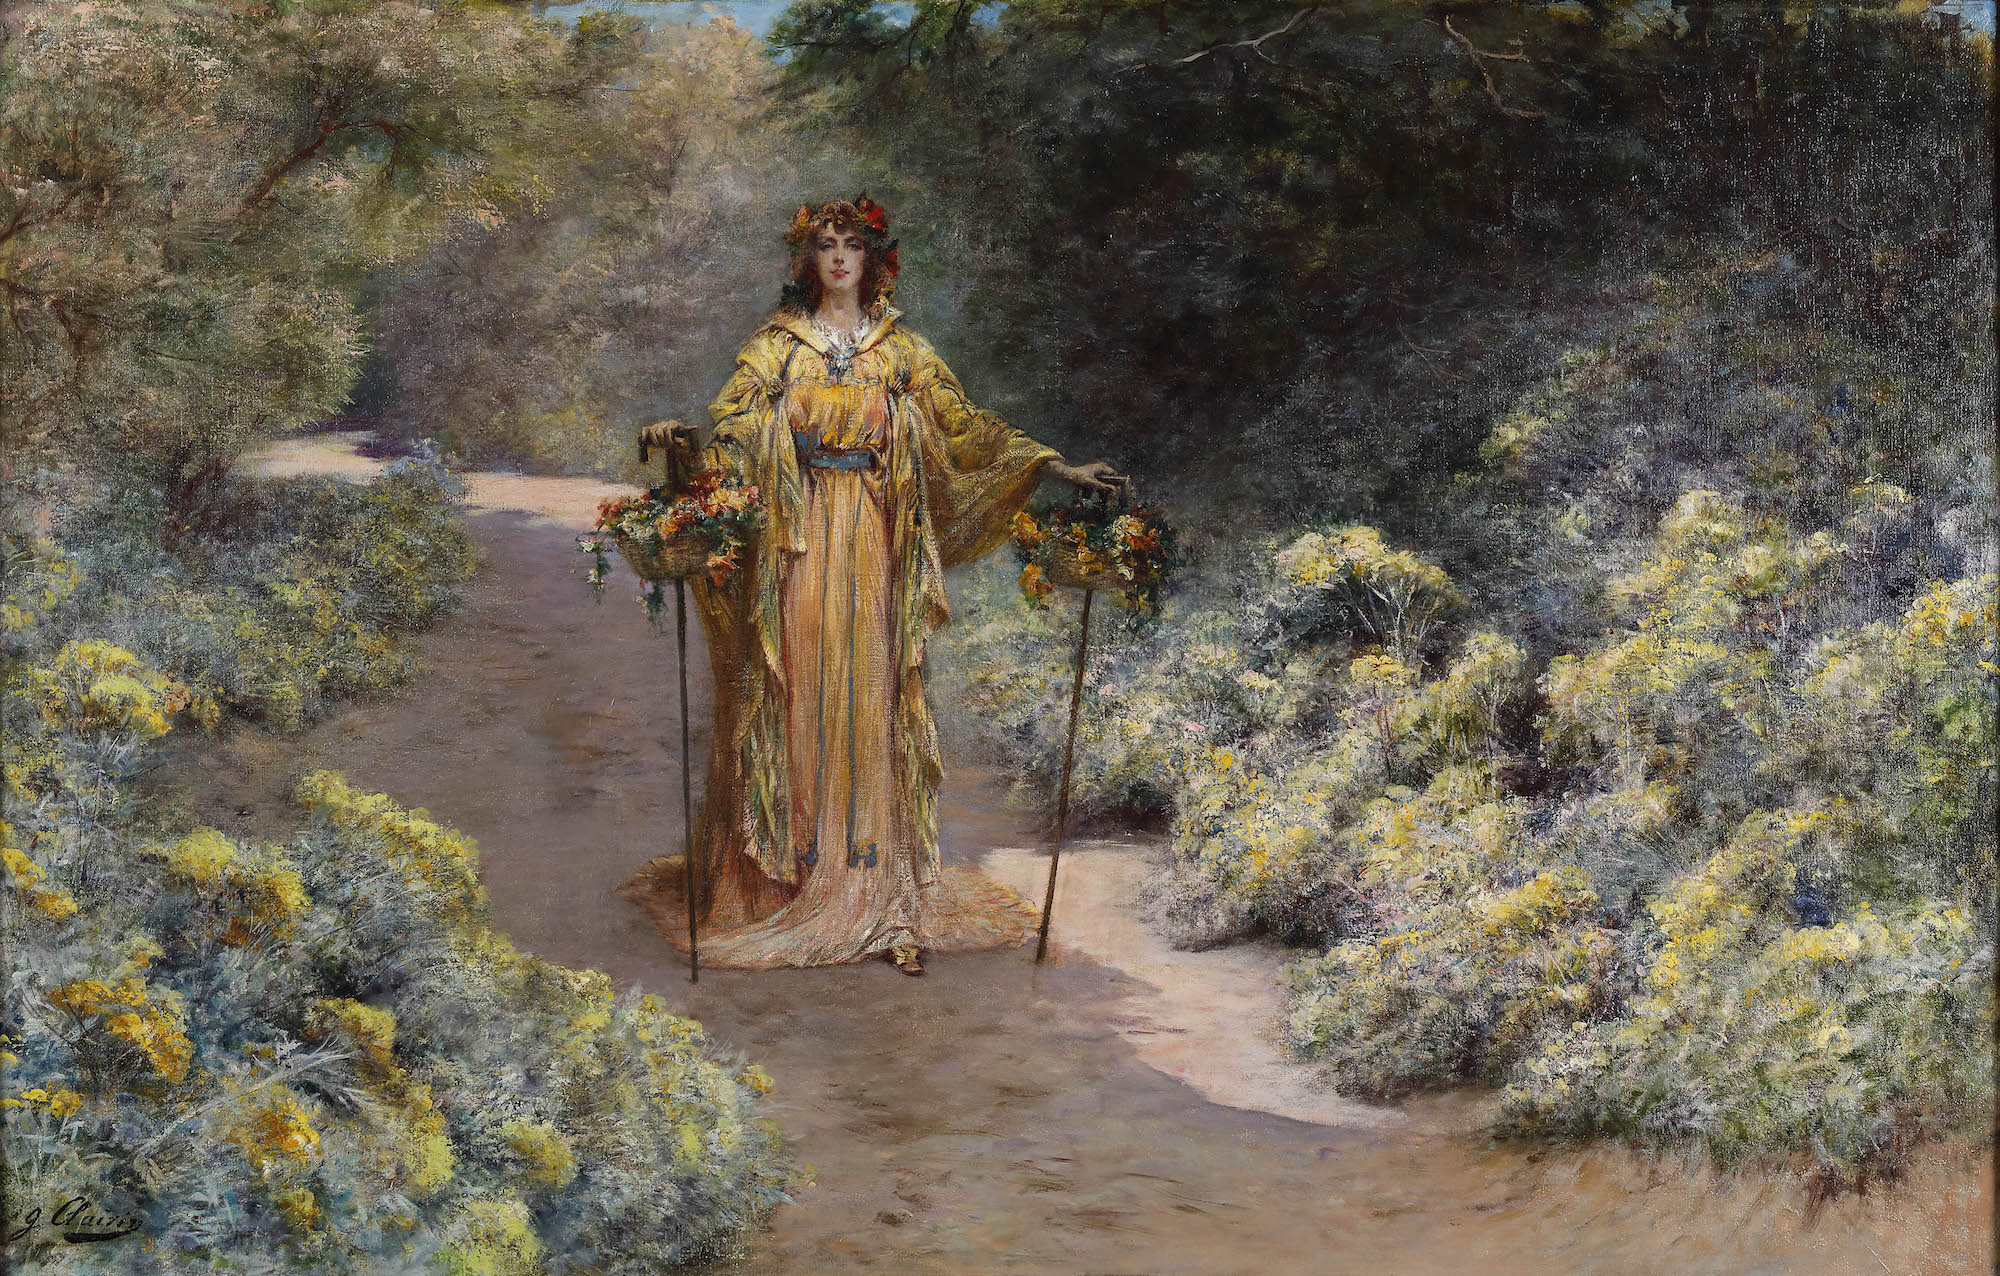 Georges Clairin (1843-1919), Sarah Bernhardt dans son jardin de Belle-Île-en-Mer, 1919. Huile sur toile, 80 x 125 cm. Tours, musée des Beaux-Arts de Tours. Photo service de presse. © Musée des Beaux-Arts de Tours.